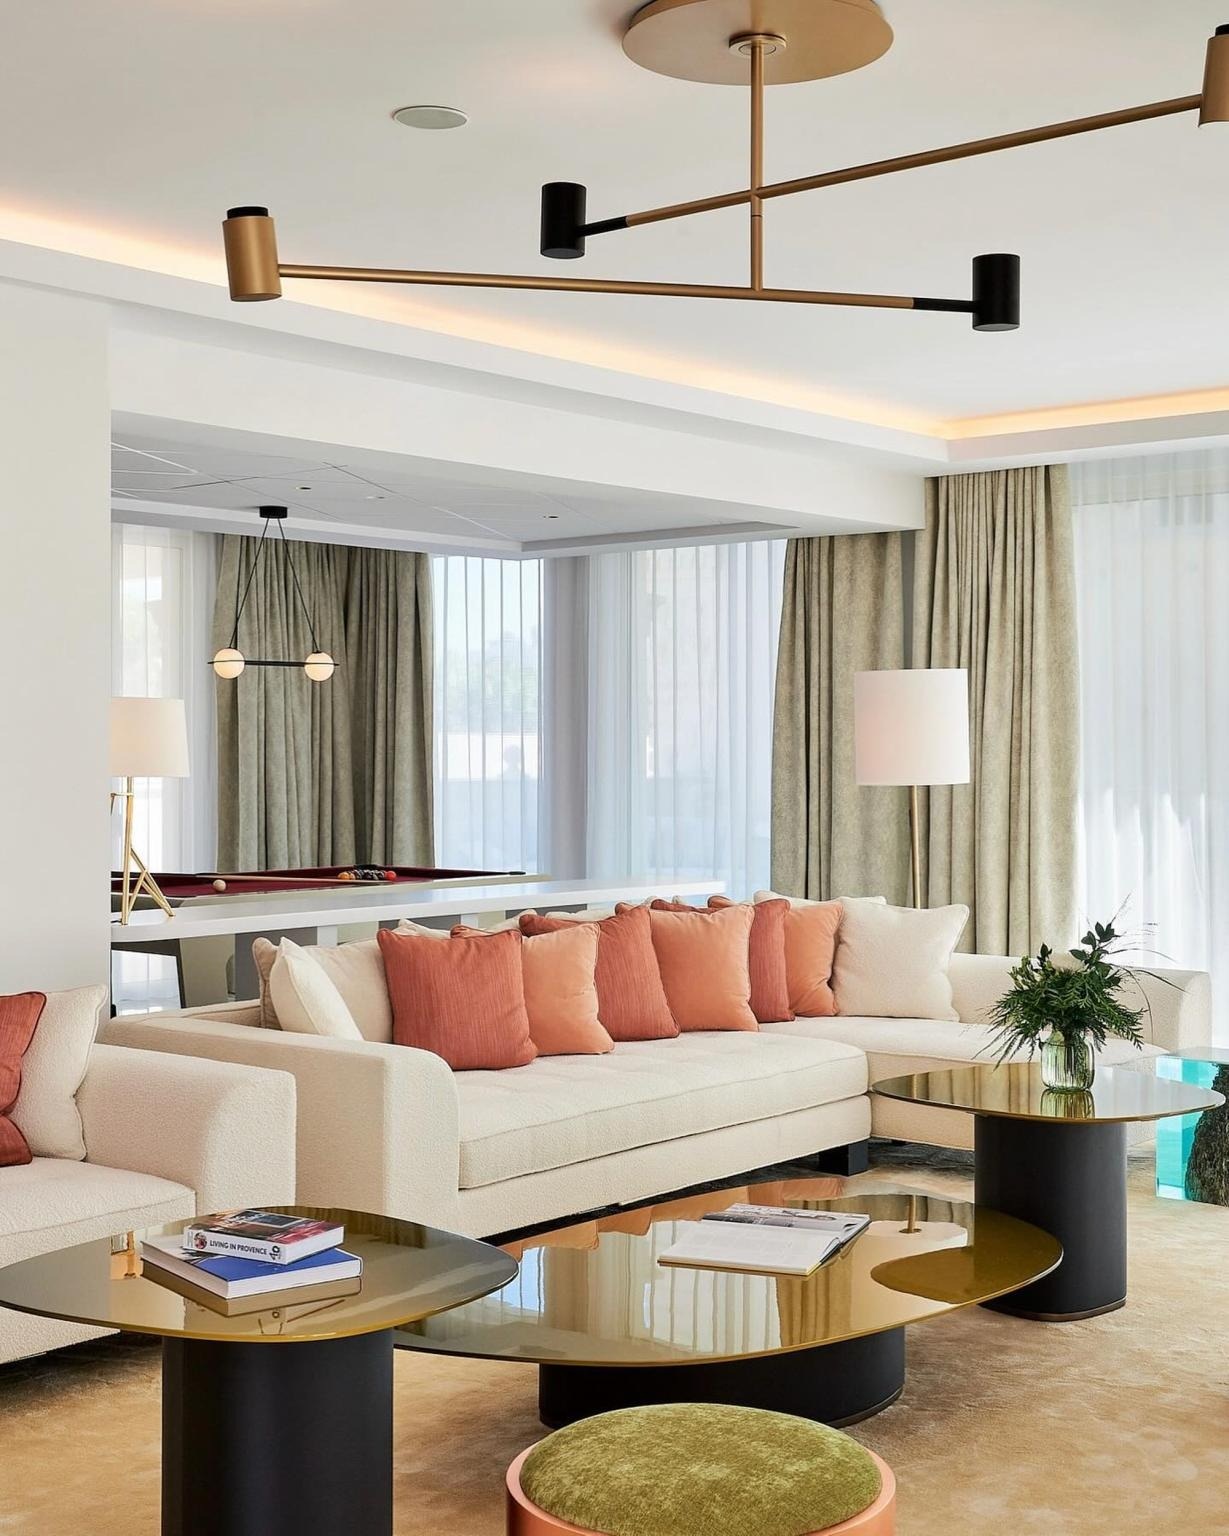 View - Phòng khách sạn 9.000 USD/đêm của siêu mẫu Heidi Klum tại LHP Cannes | Báo Dân trí